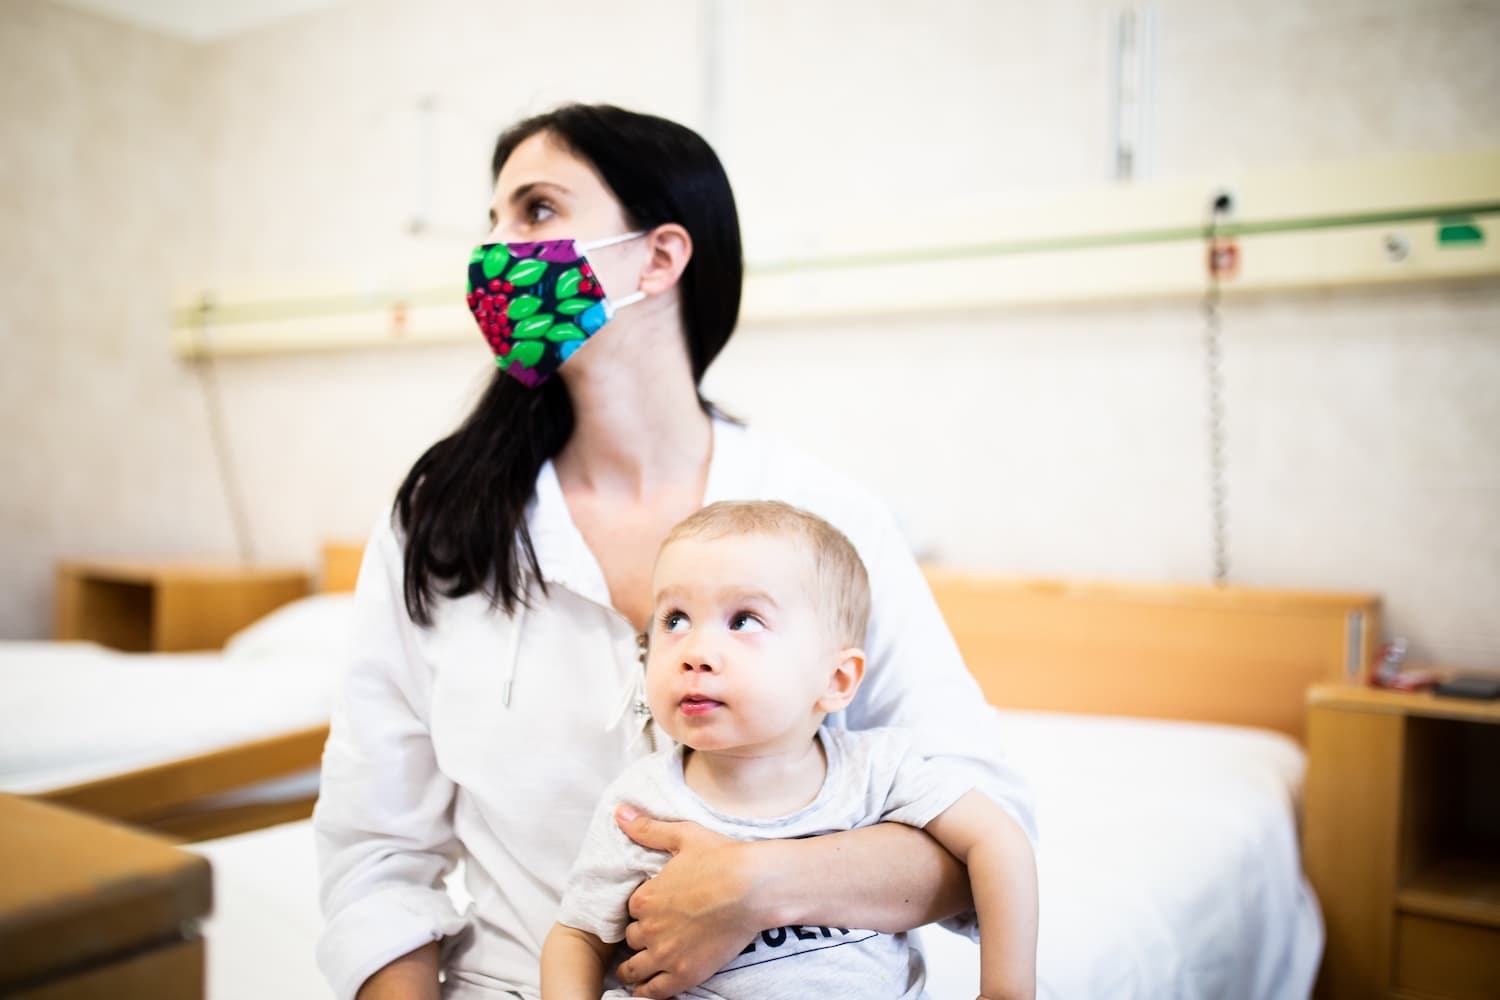 Három szlovák gyermek kapta meg Magyarországon a világ legdrágább gyógyszerét